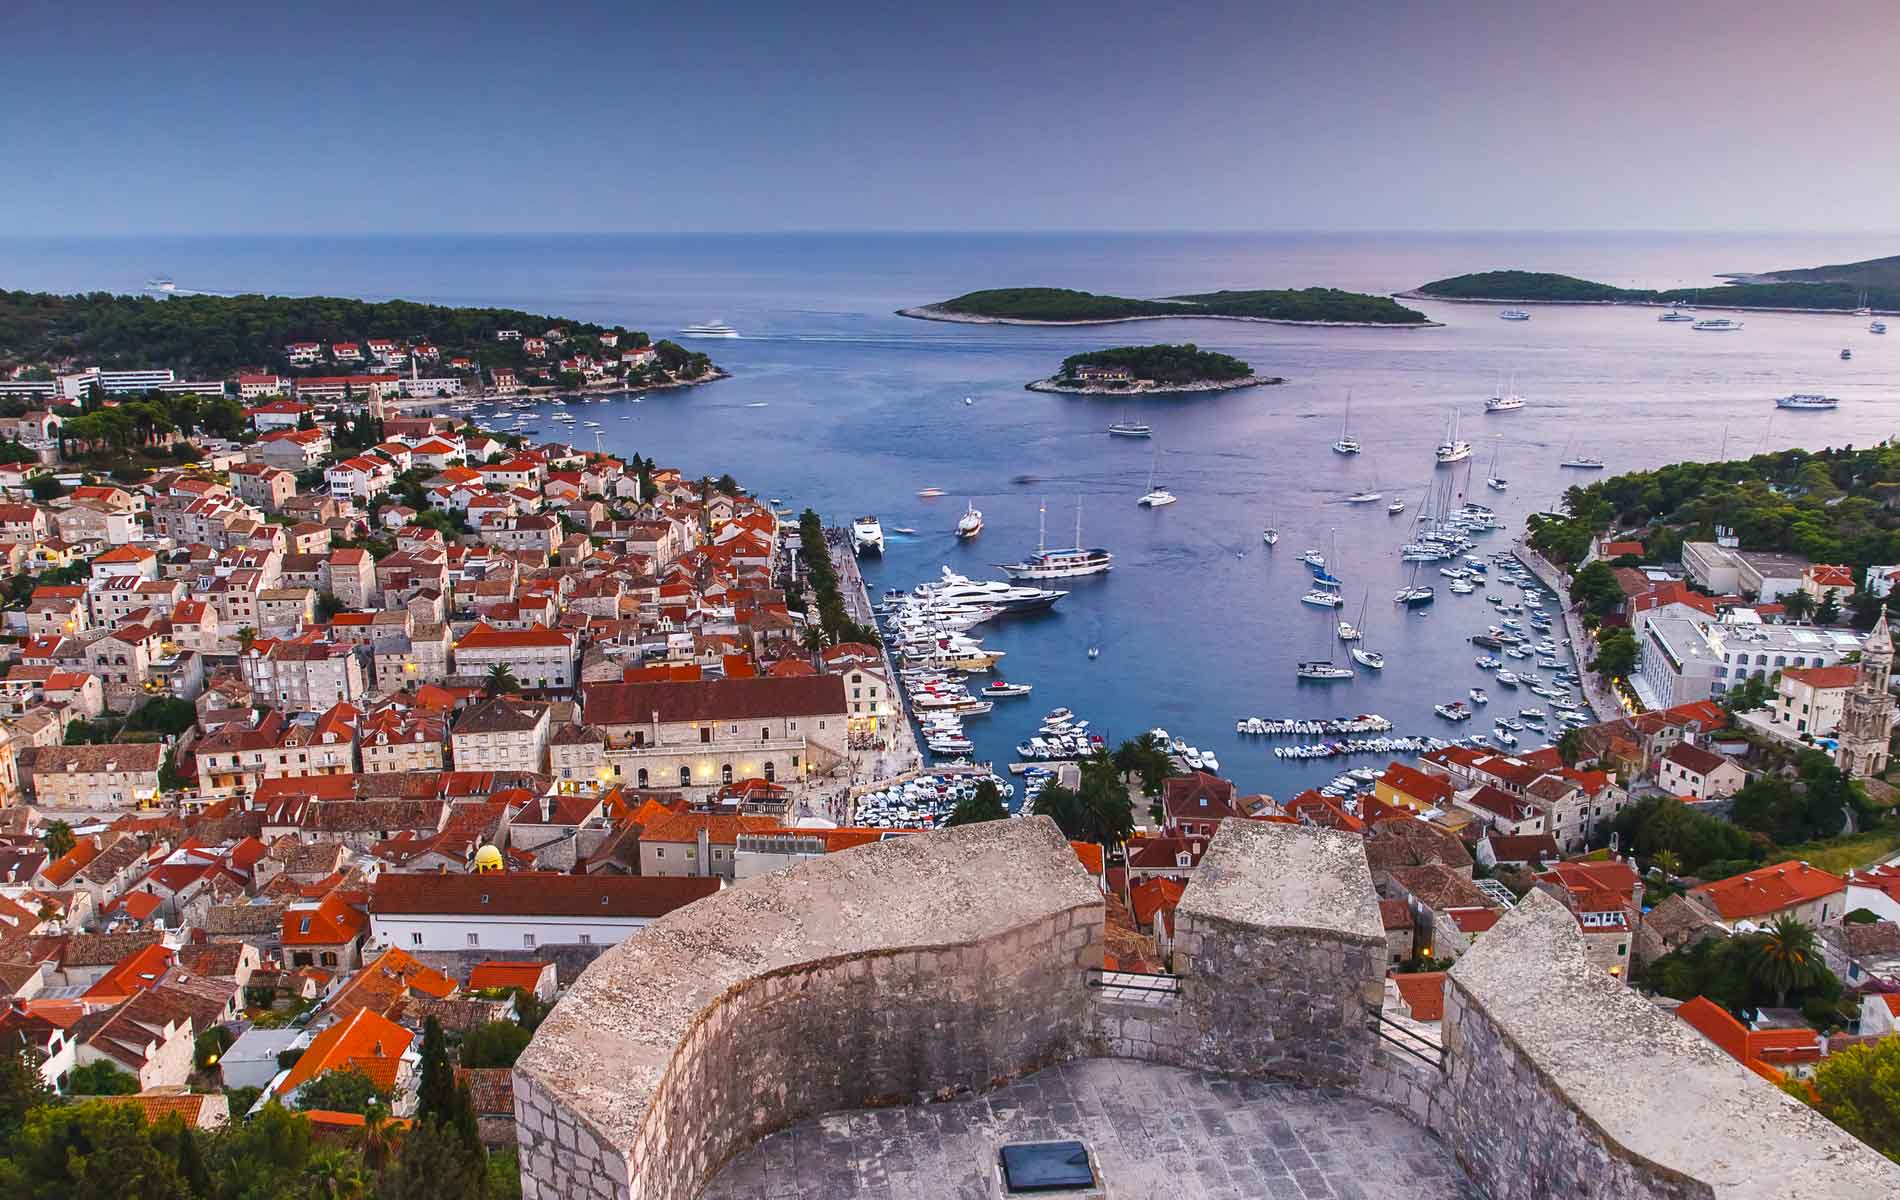 A view over the port city of Hvar, Croatia